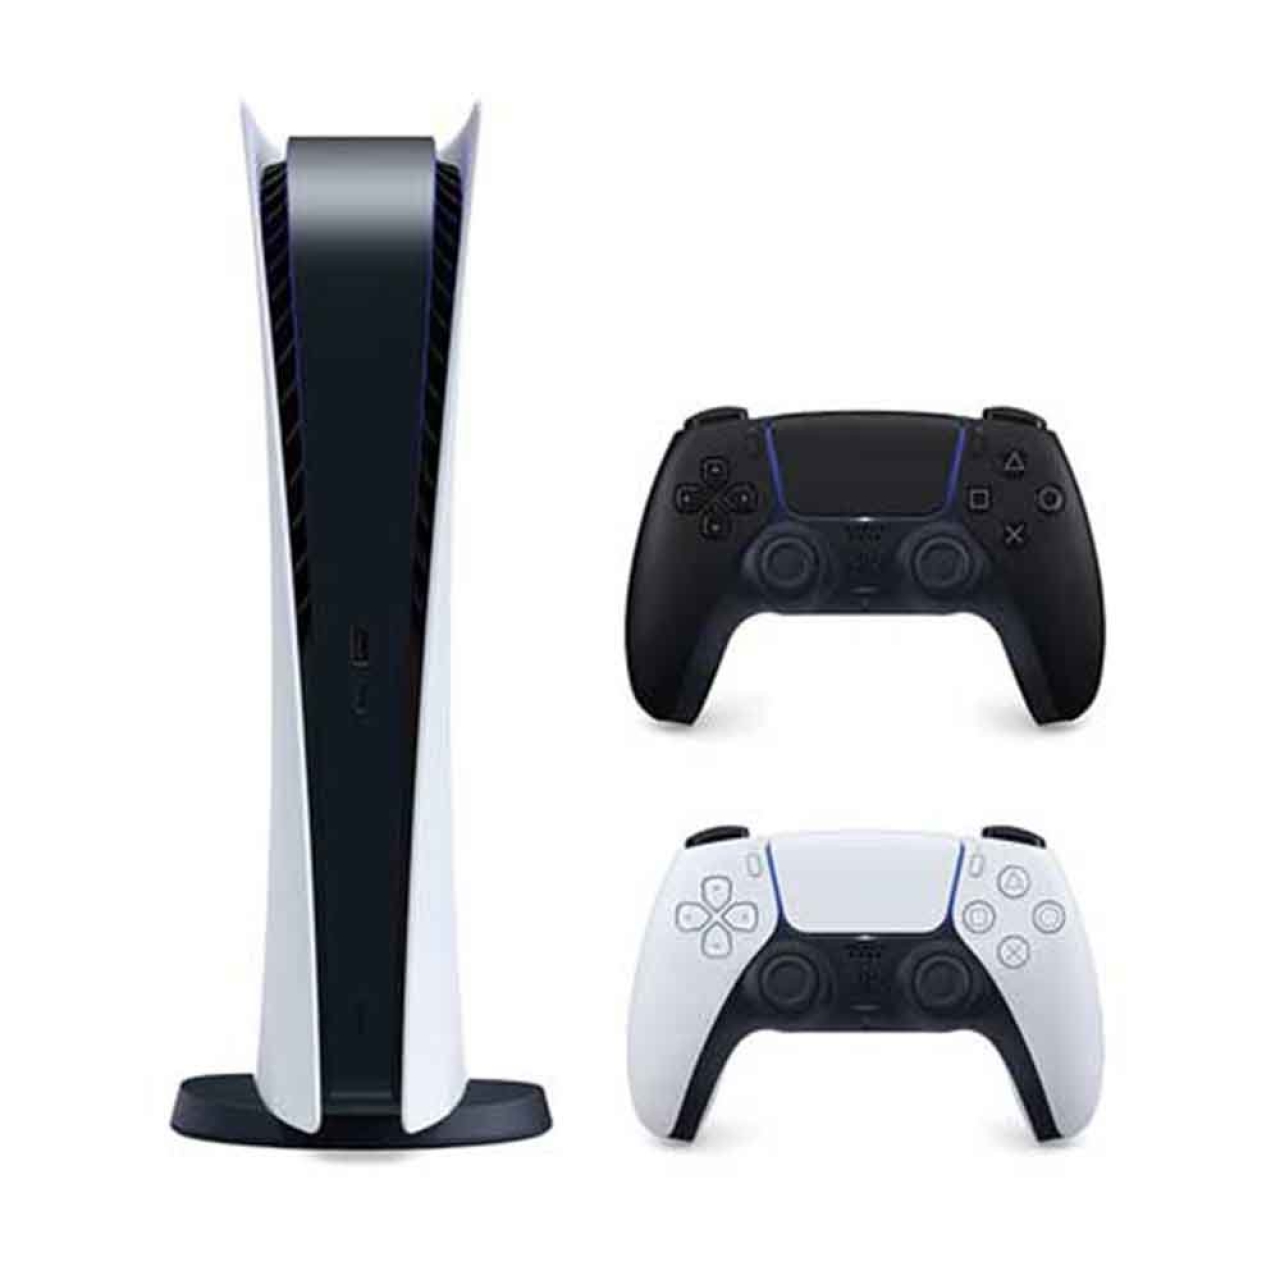 کنسول بازی سونی مدل Playstation 5 ظرفیت 825 گیگابایت به همراه یک دسته مشکی اضافی